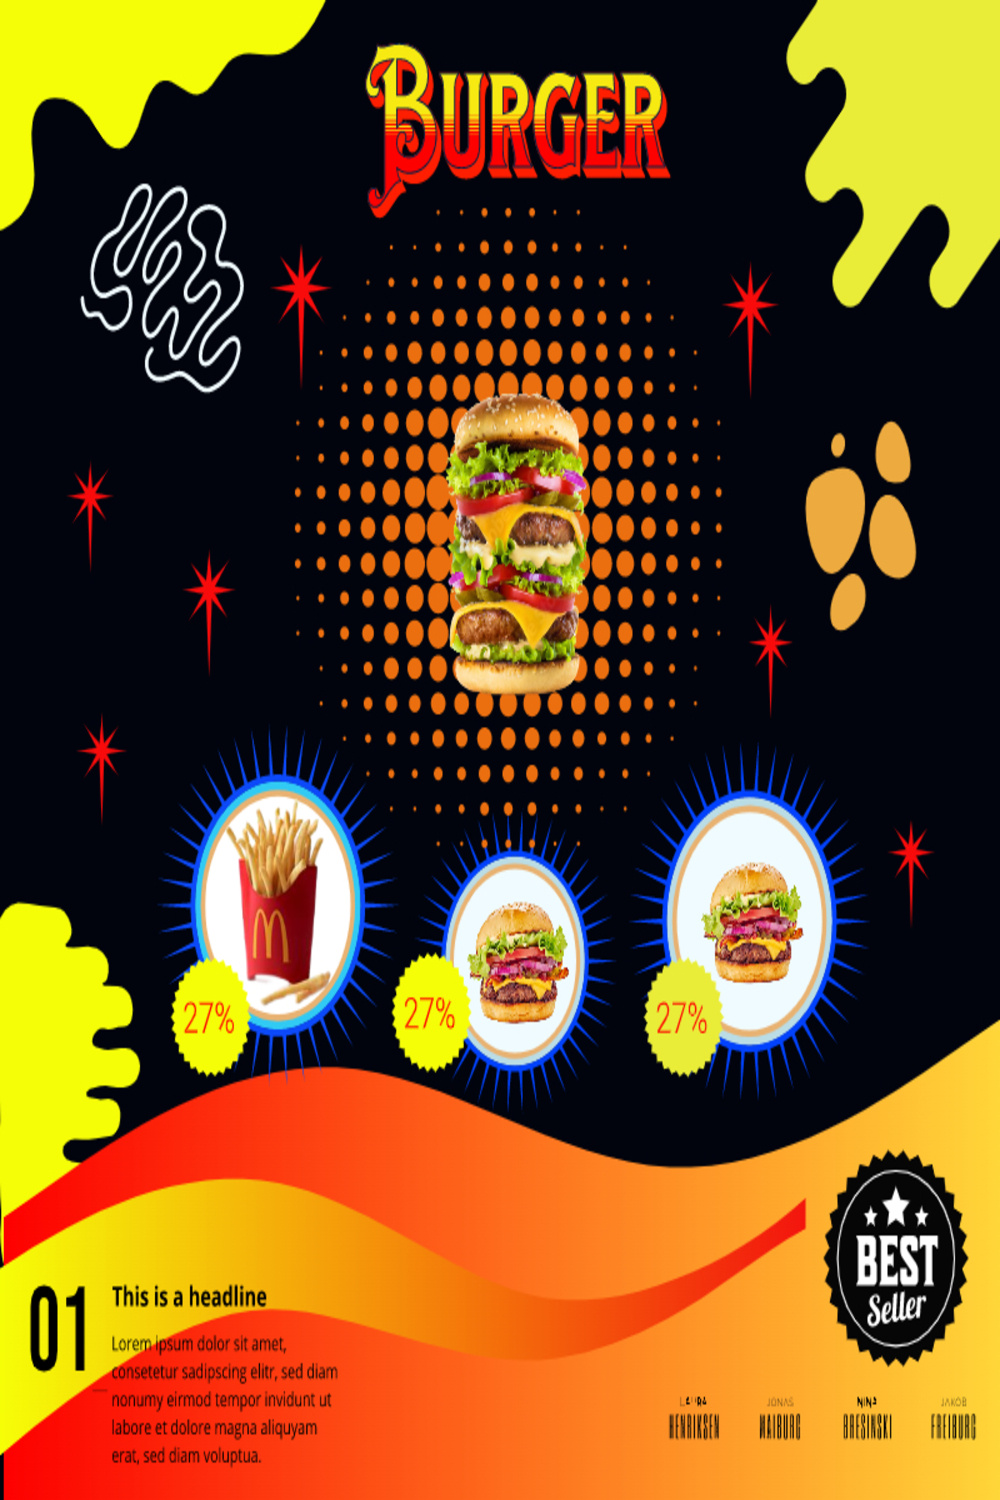 Burger Shop Banner Design pinterest image.